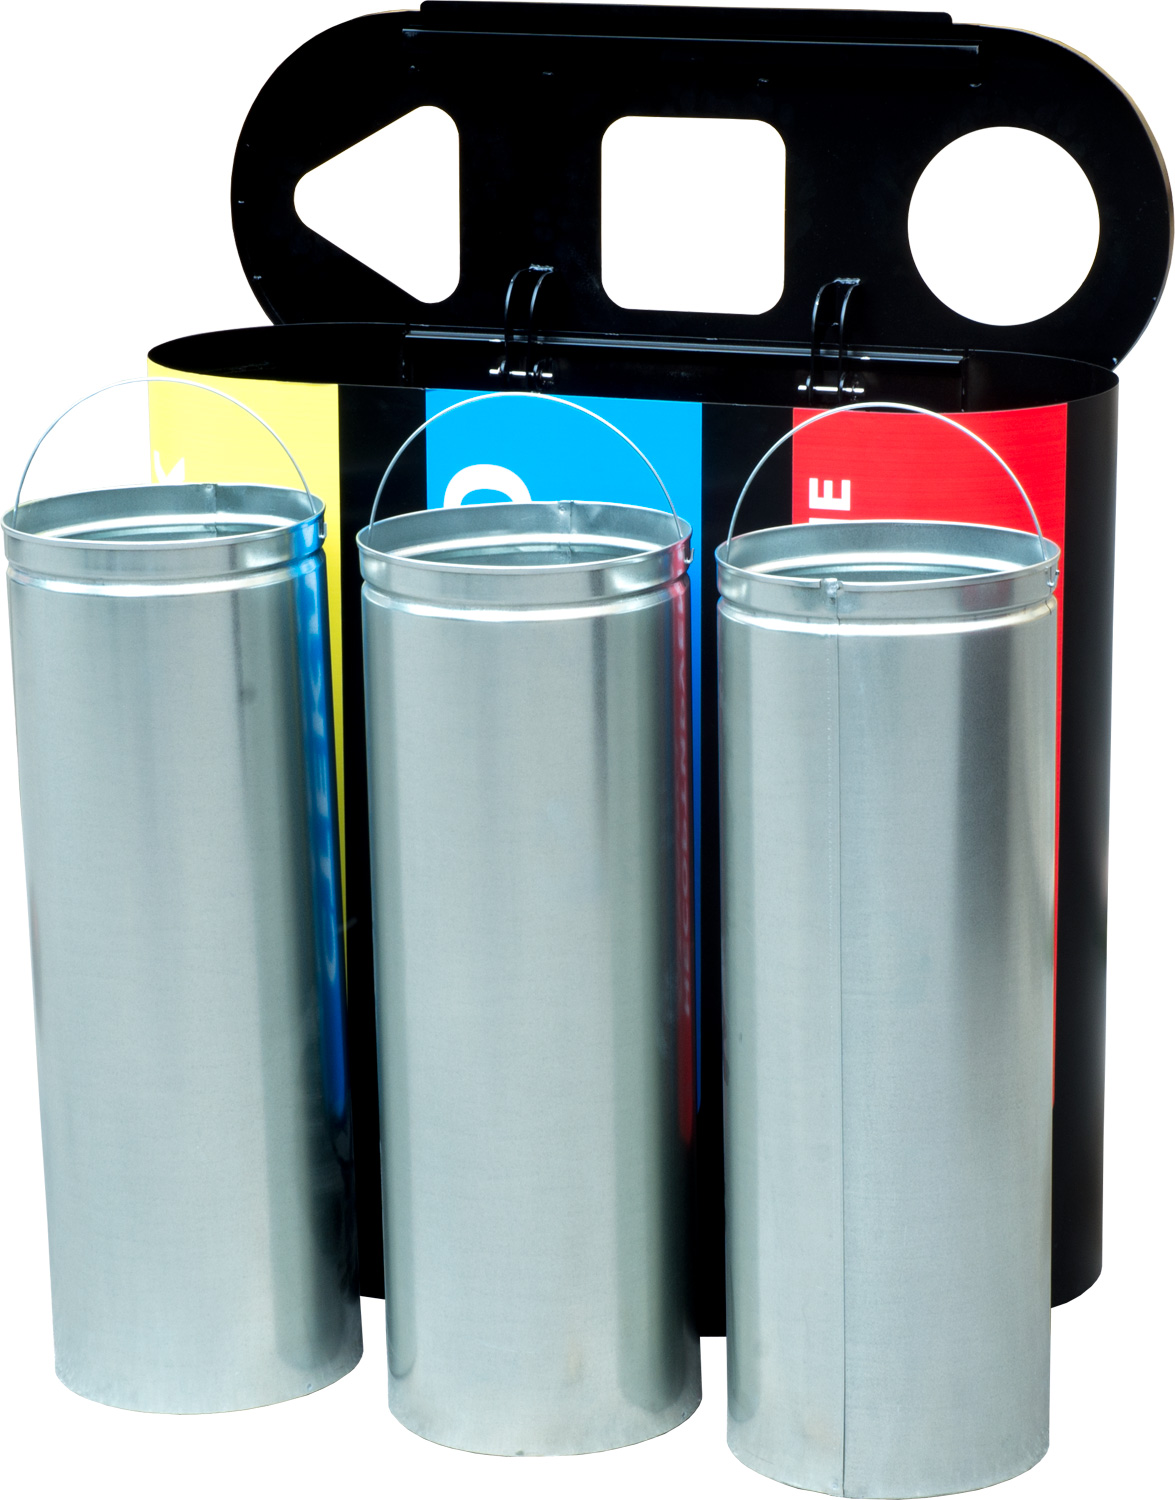 Урна для раздельного сбора мусора Акцент-3 с наклейками: пластик / стекло / несортируемые отходы Акцент-3 с наклейками (2) 920x380x870 мм 180 л